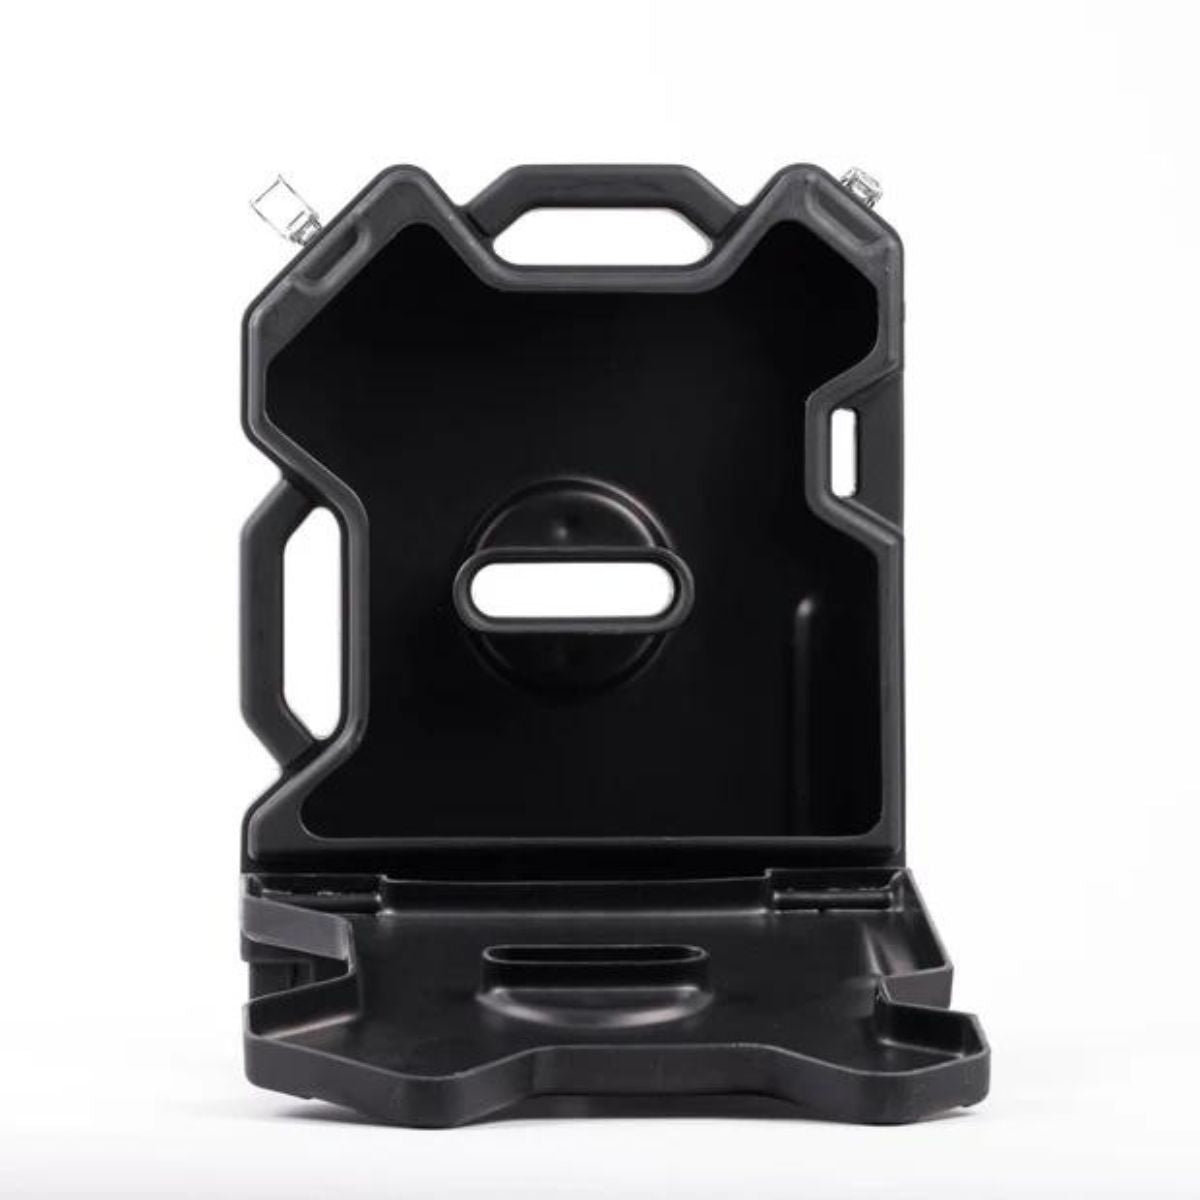 RotoPax RX-2S 2 Gallon Storage Case - Black